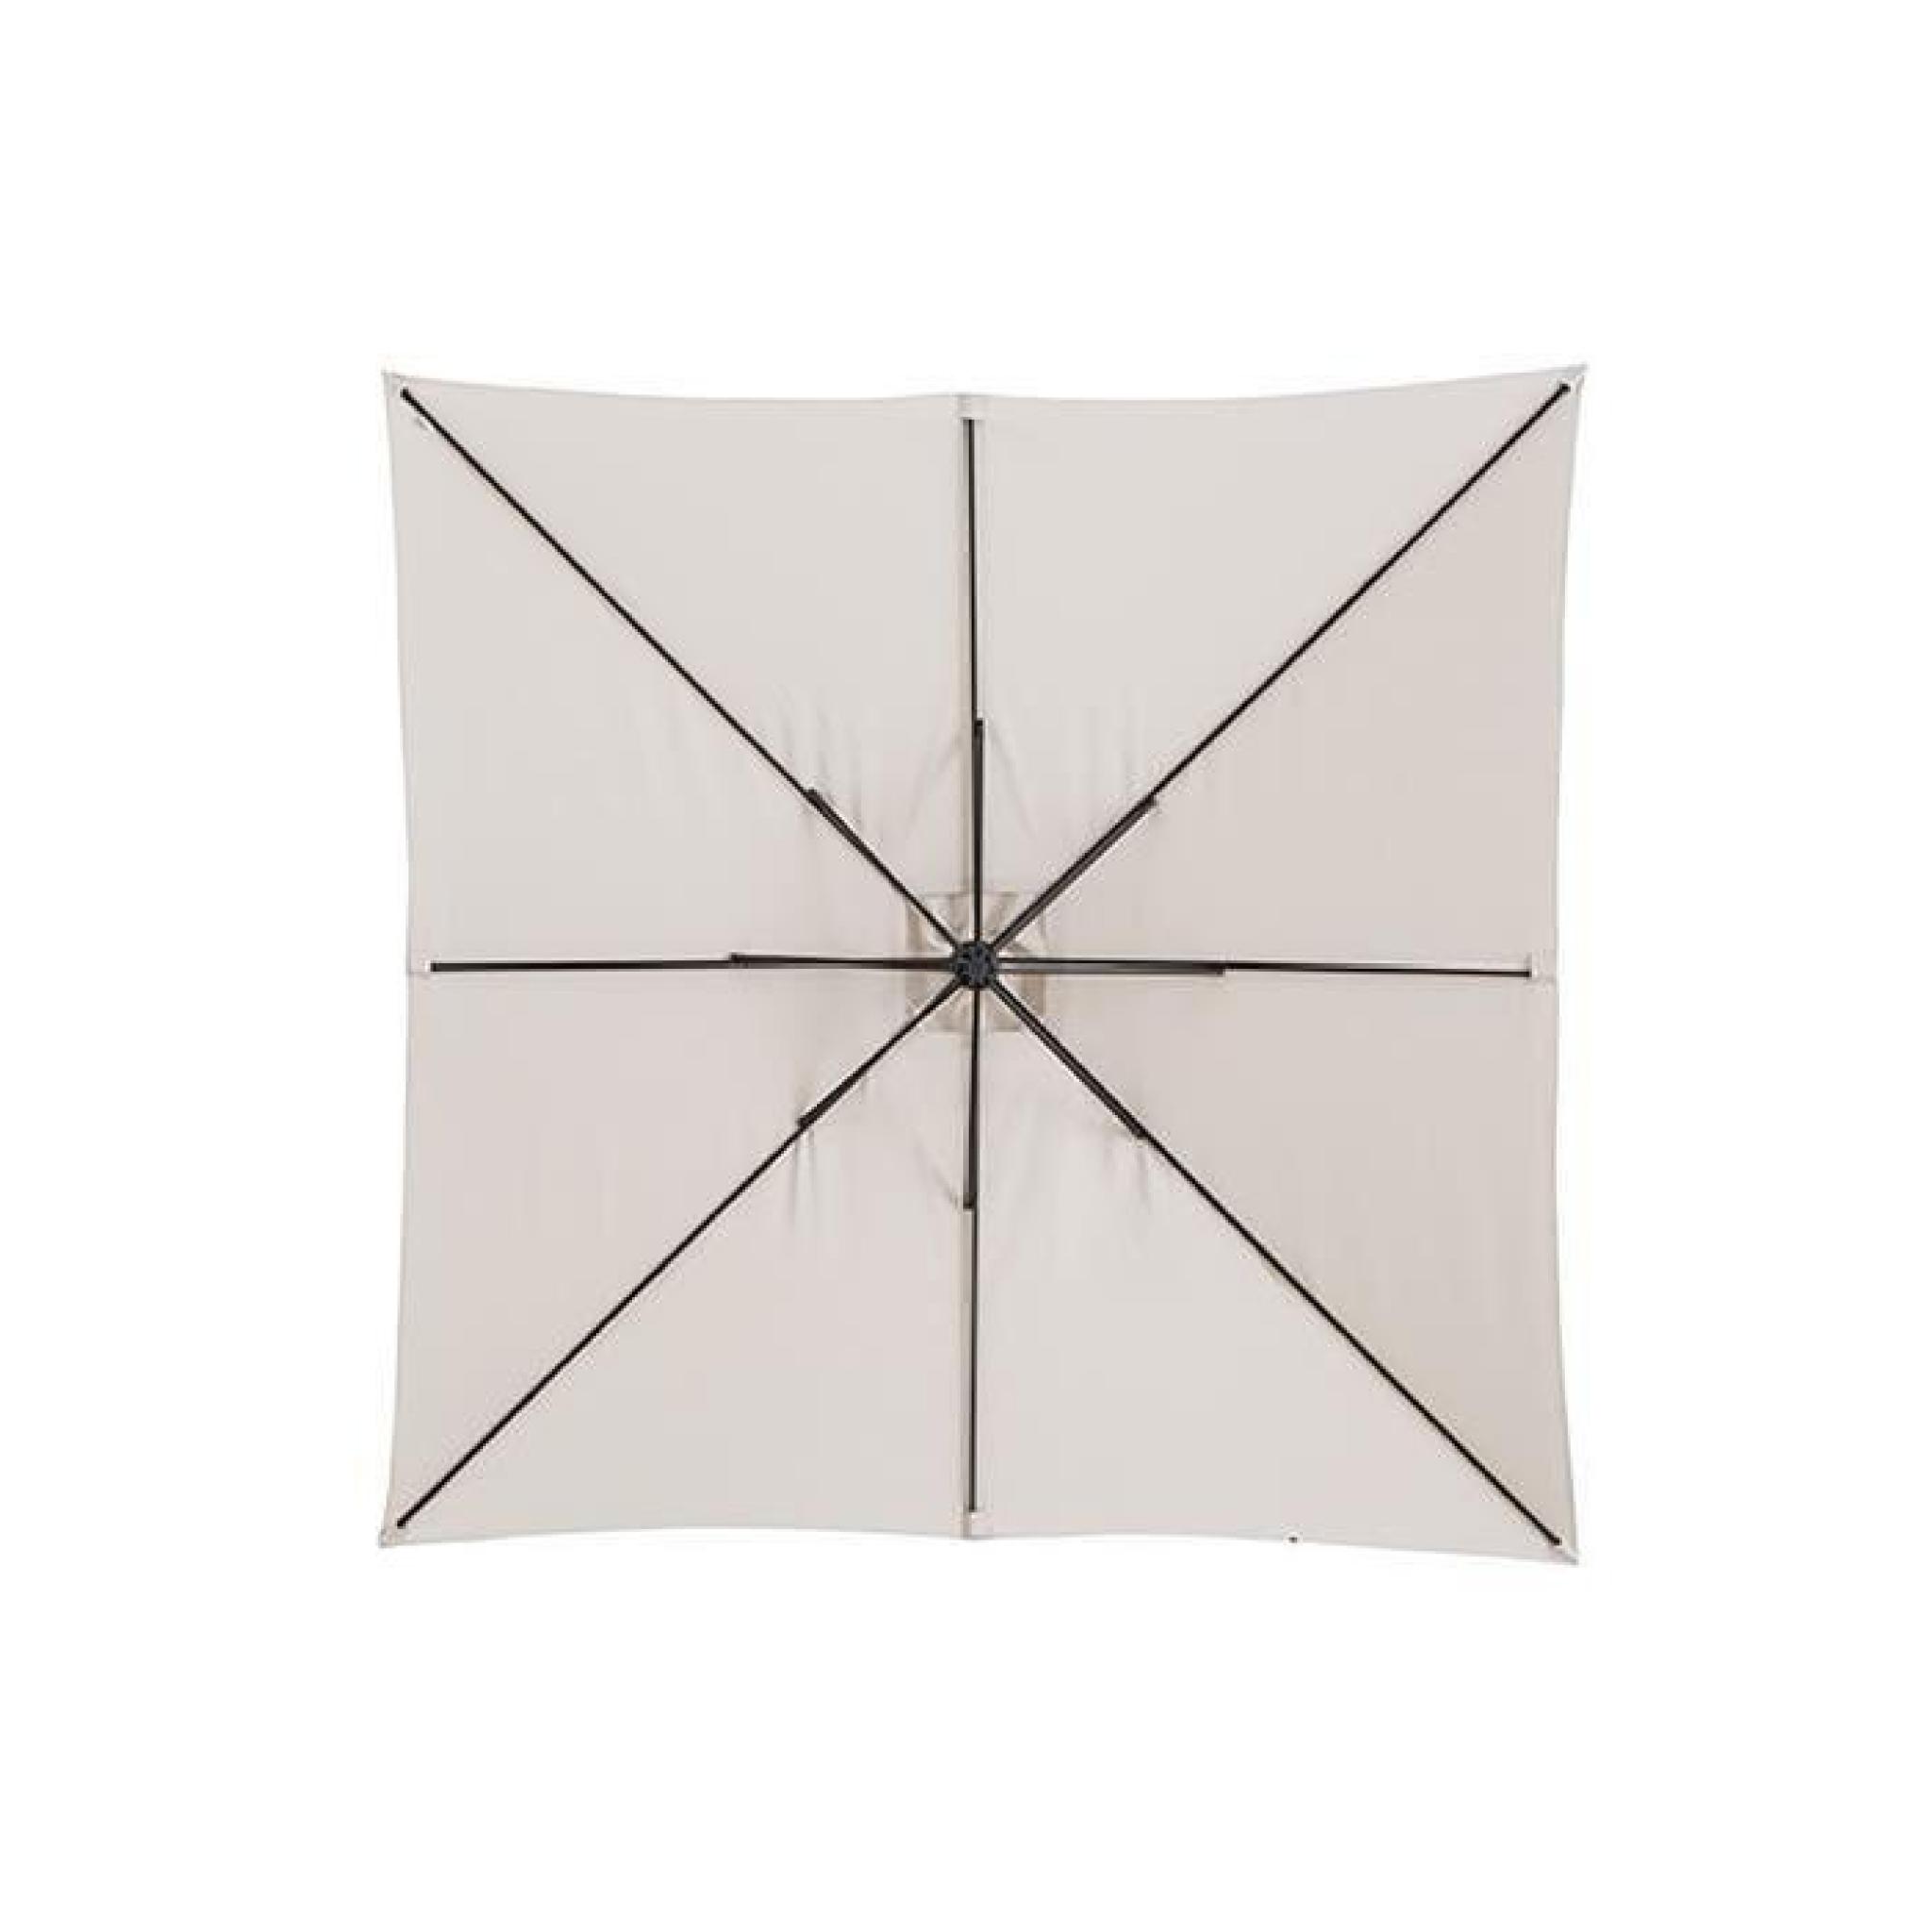 Parasol carré déporté Sable en Aluminium, acier et polyester, pied non compris, 2,5 x 2,5 x 2,4 m pas cher